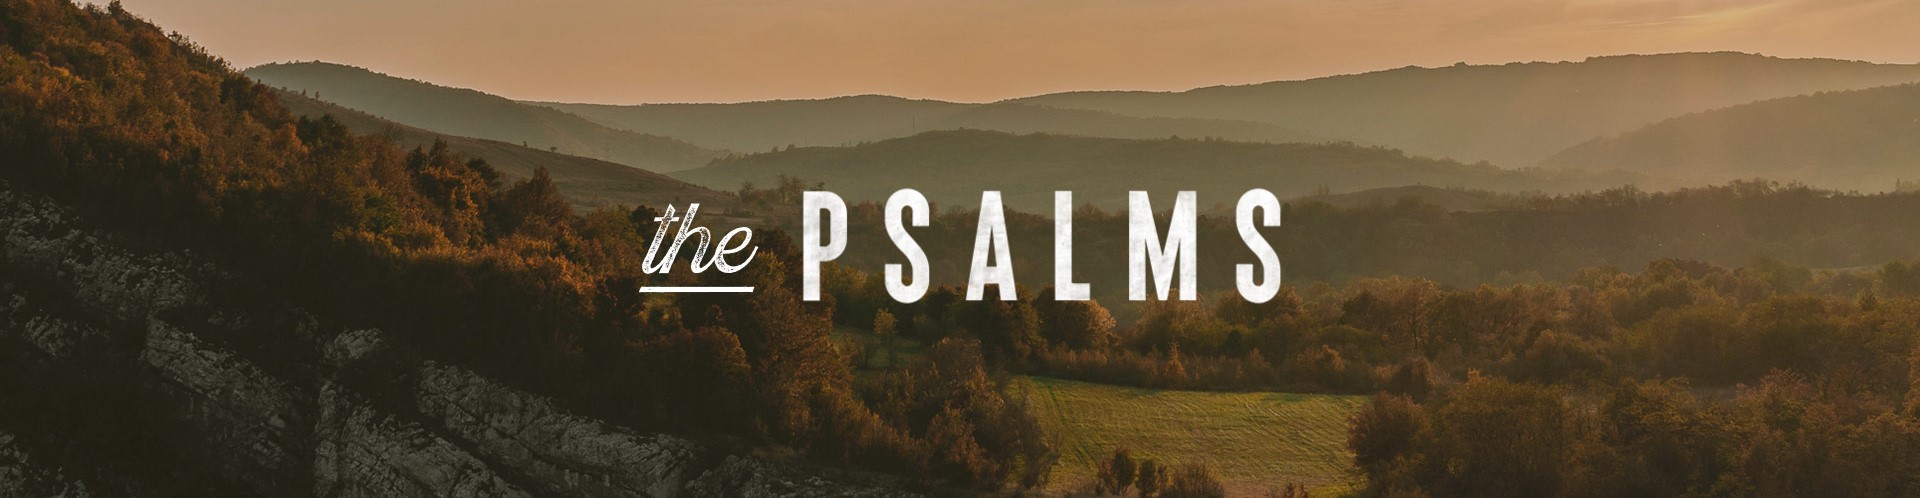 psalms 6b